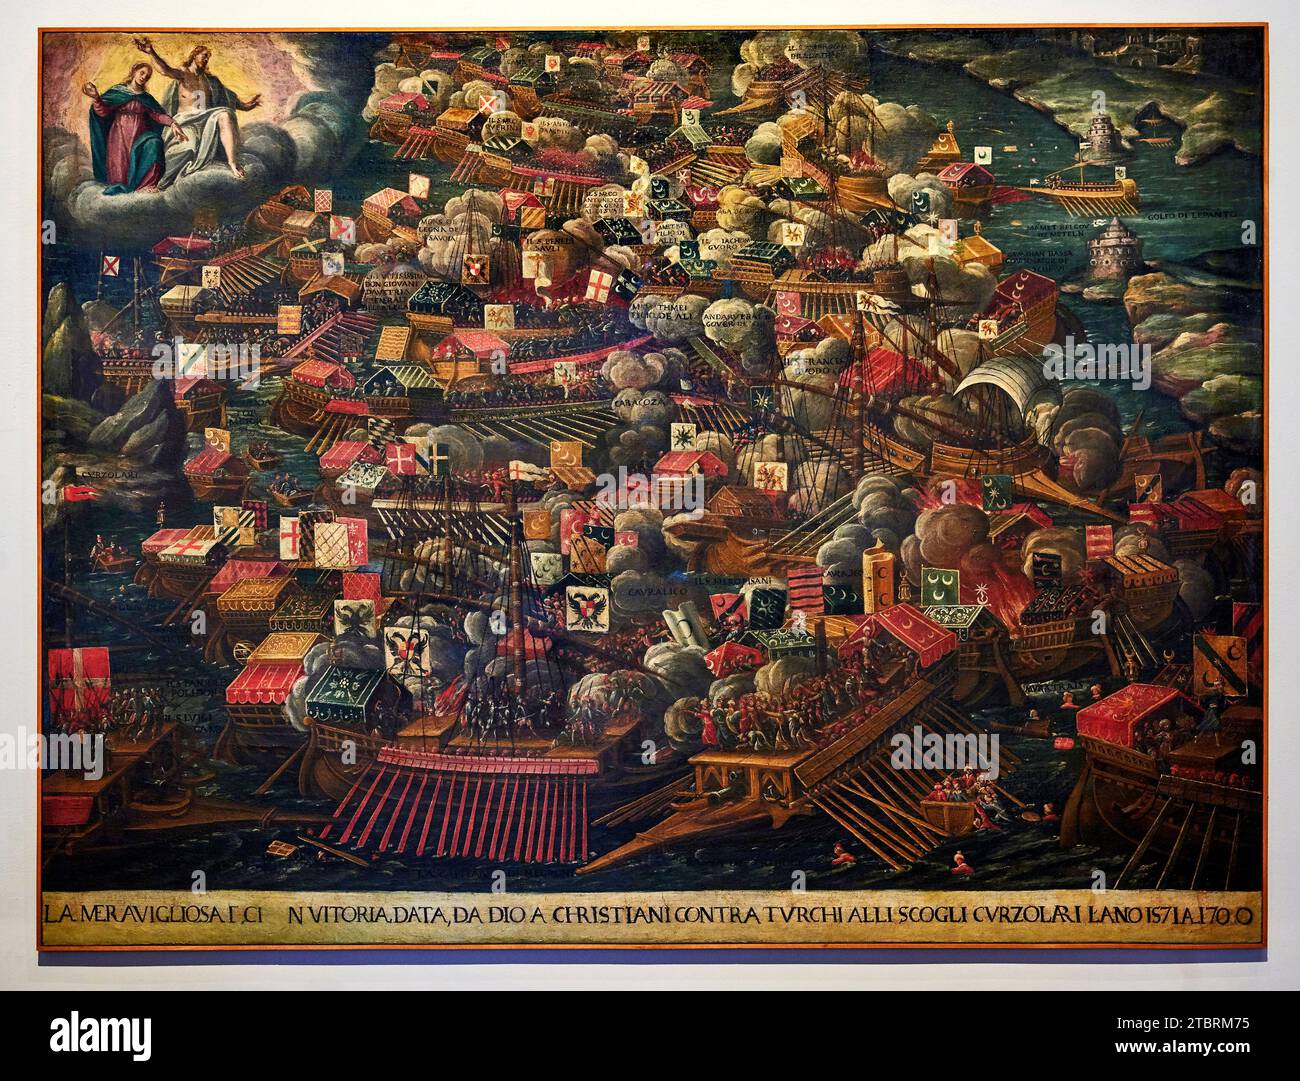 La battaglia di Lepanto - olio su tela - pittore veneto dell’ultimo quarto del XVI secolo  - Venezia, Museo Correr Stock Photo